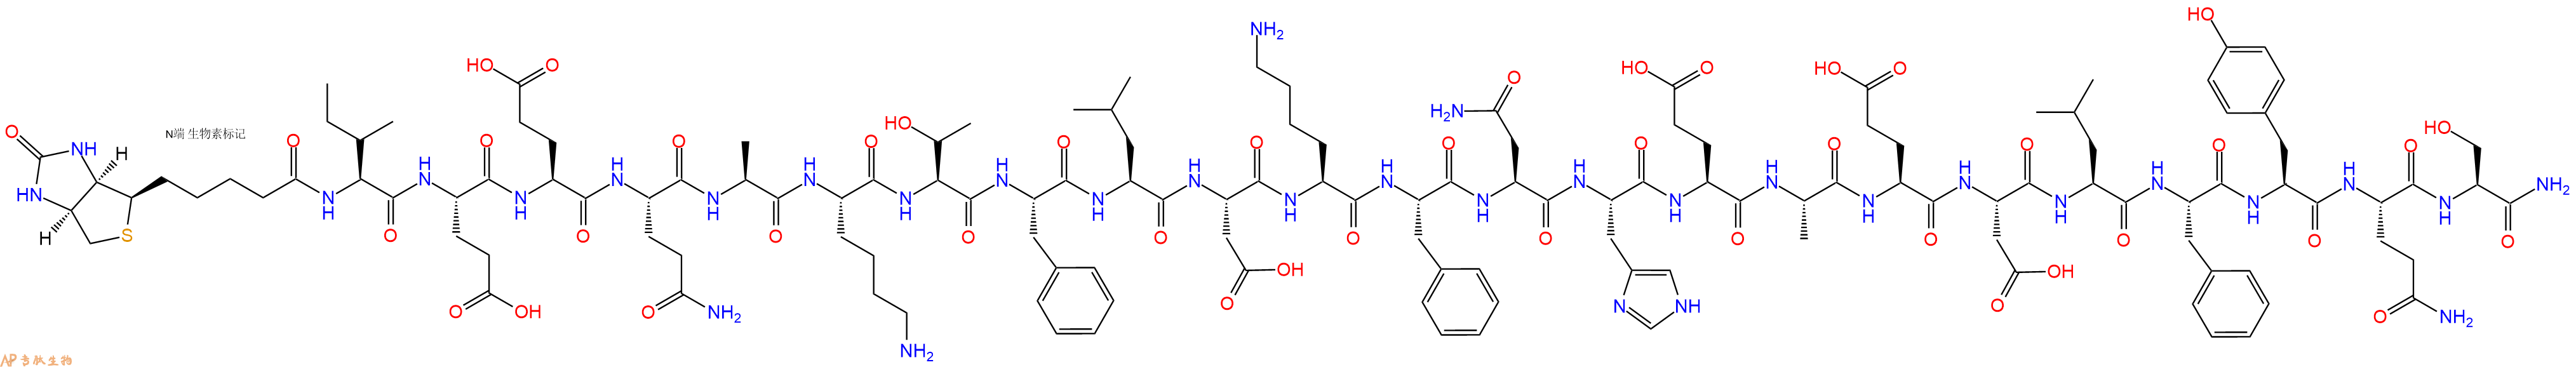 专肽生物产品Biotin-Ile-Glu-Glu-Gln-Ala-Lys-Thr-Phe-Leu-Asp-Lys